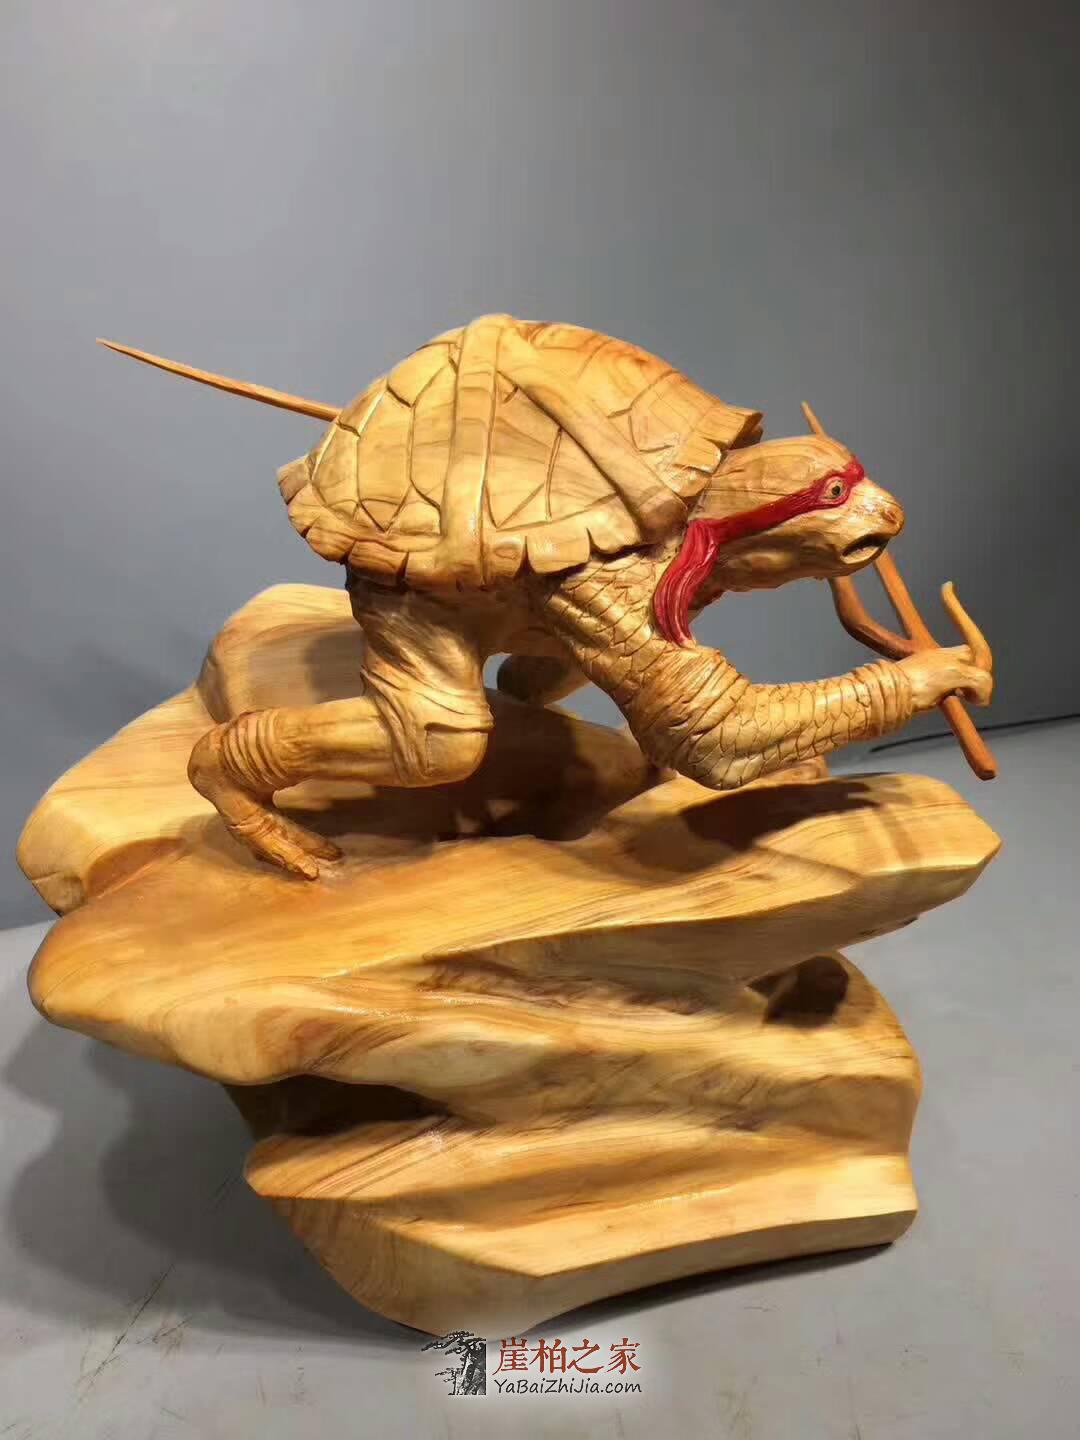 崖柏《忍者神龟》创意独特礼品 雕工细致栩栩如生-4